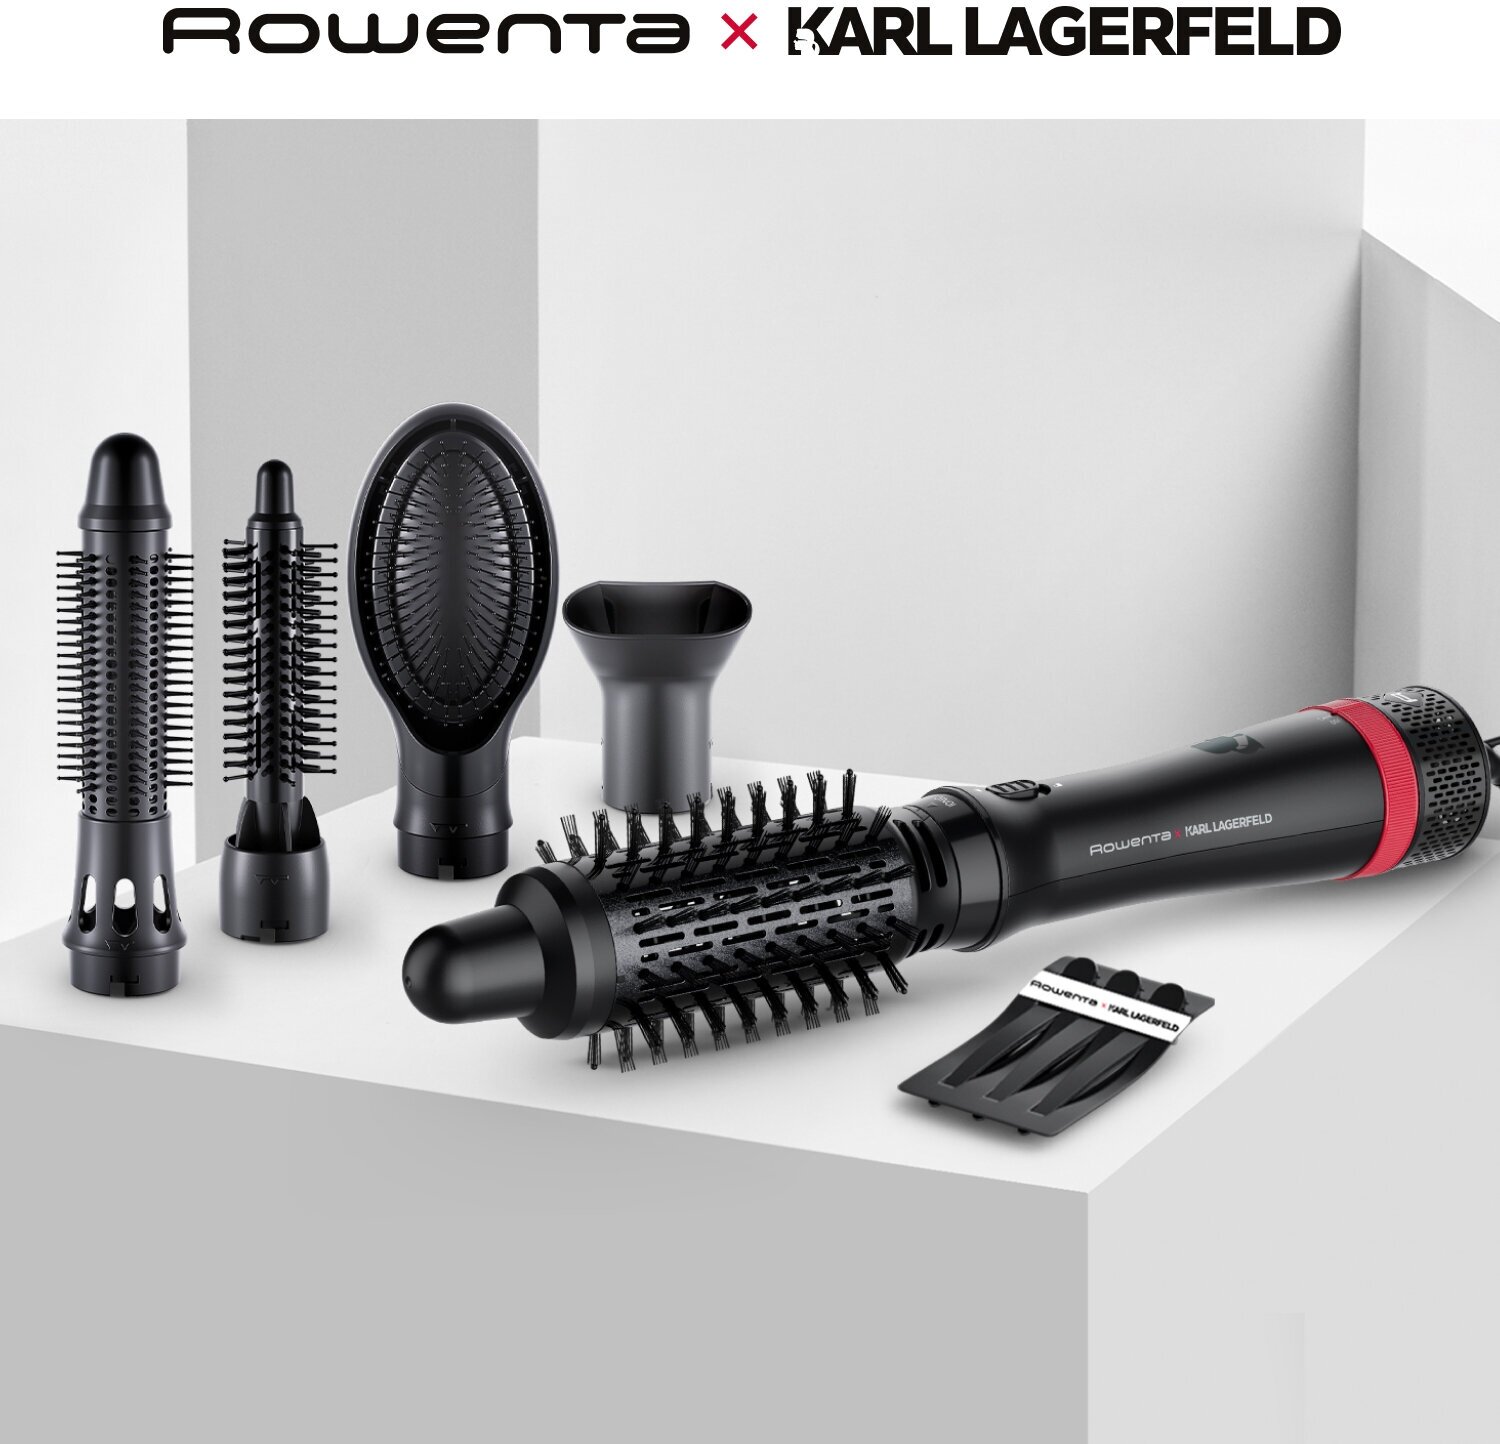 Фен щетка для волос Rowenta Karl Lagerfeld Express Style CF635LF0, черный, 5 насадок, покрытие Keratin & Glow, вращающийся шнур